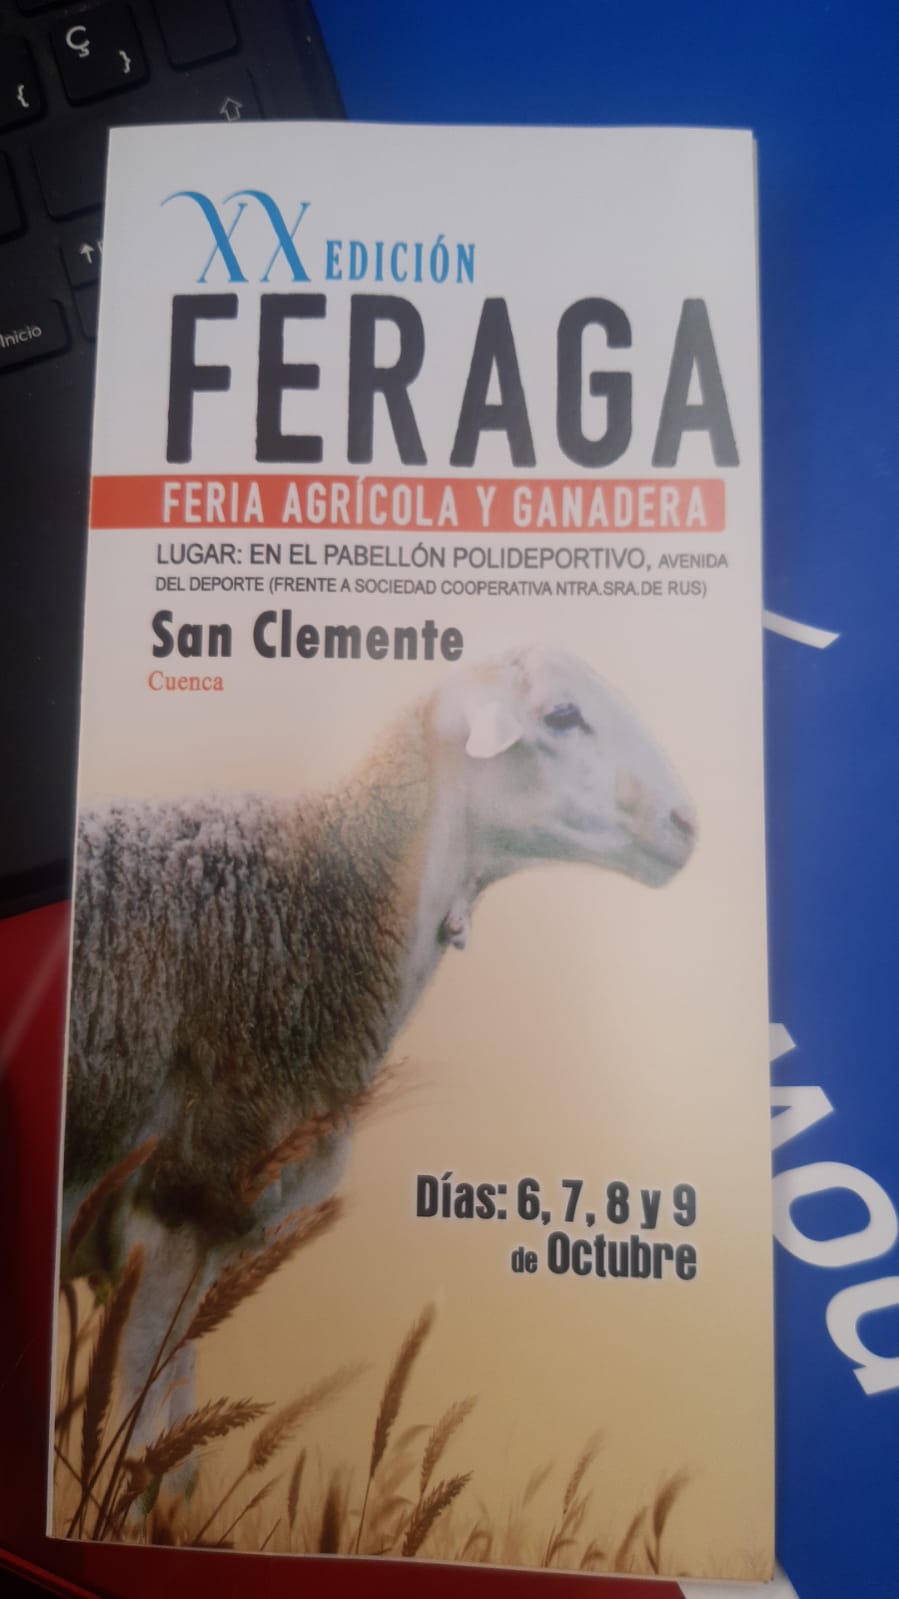 Feria Agrícola y Ganadera de San Clemente (Cuenca), FERAGA